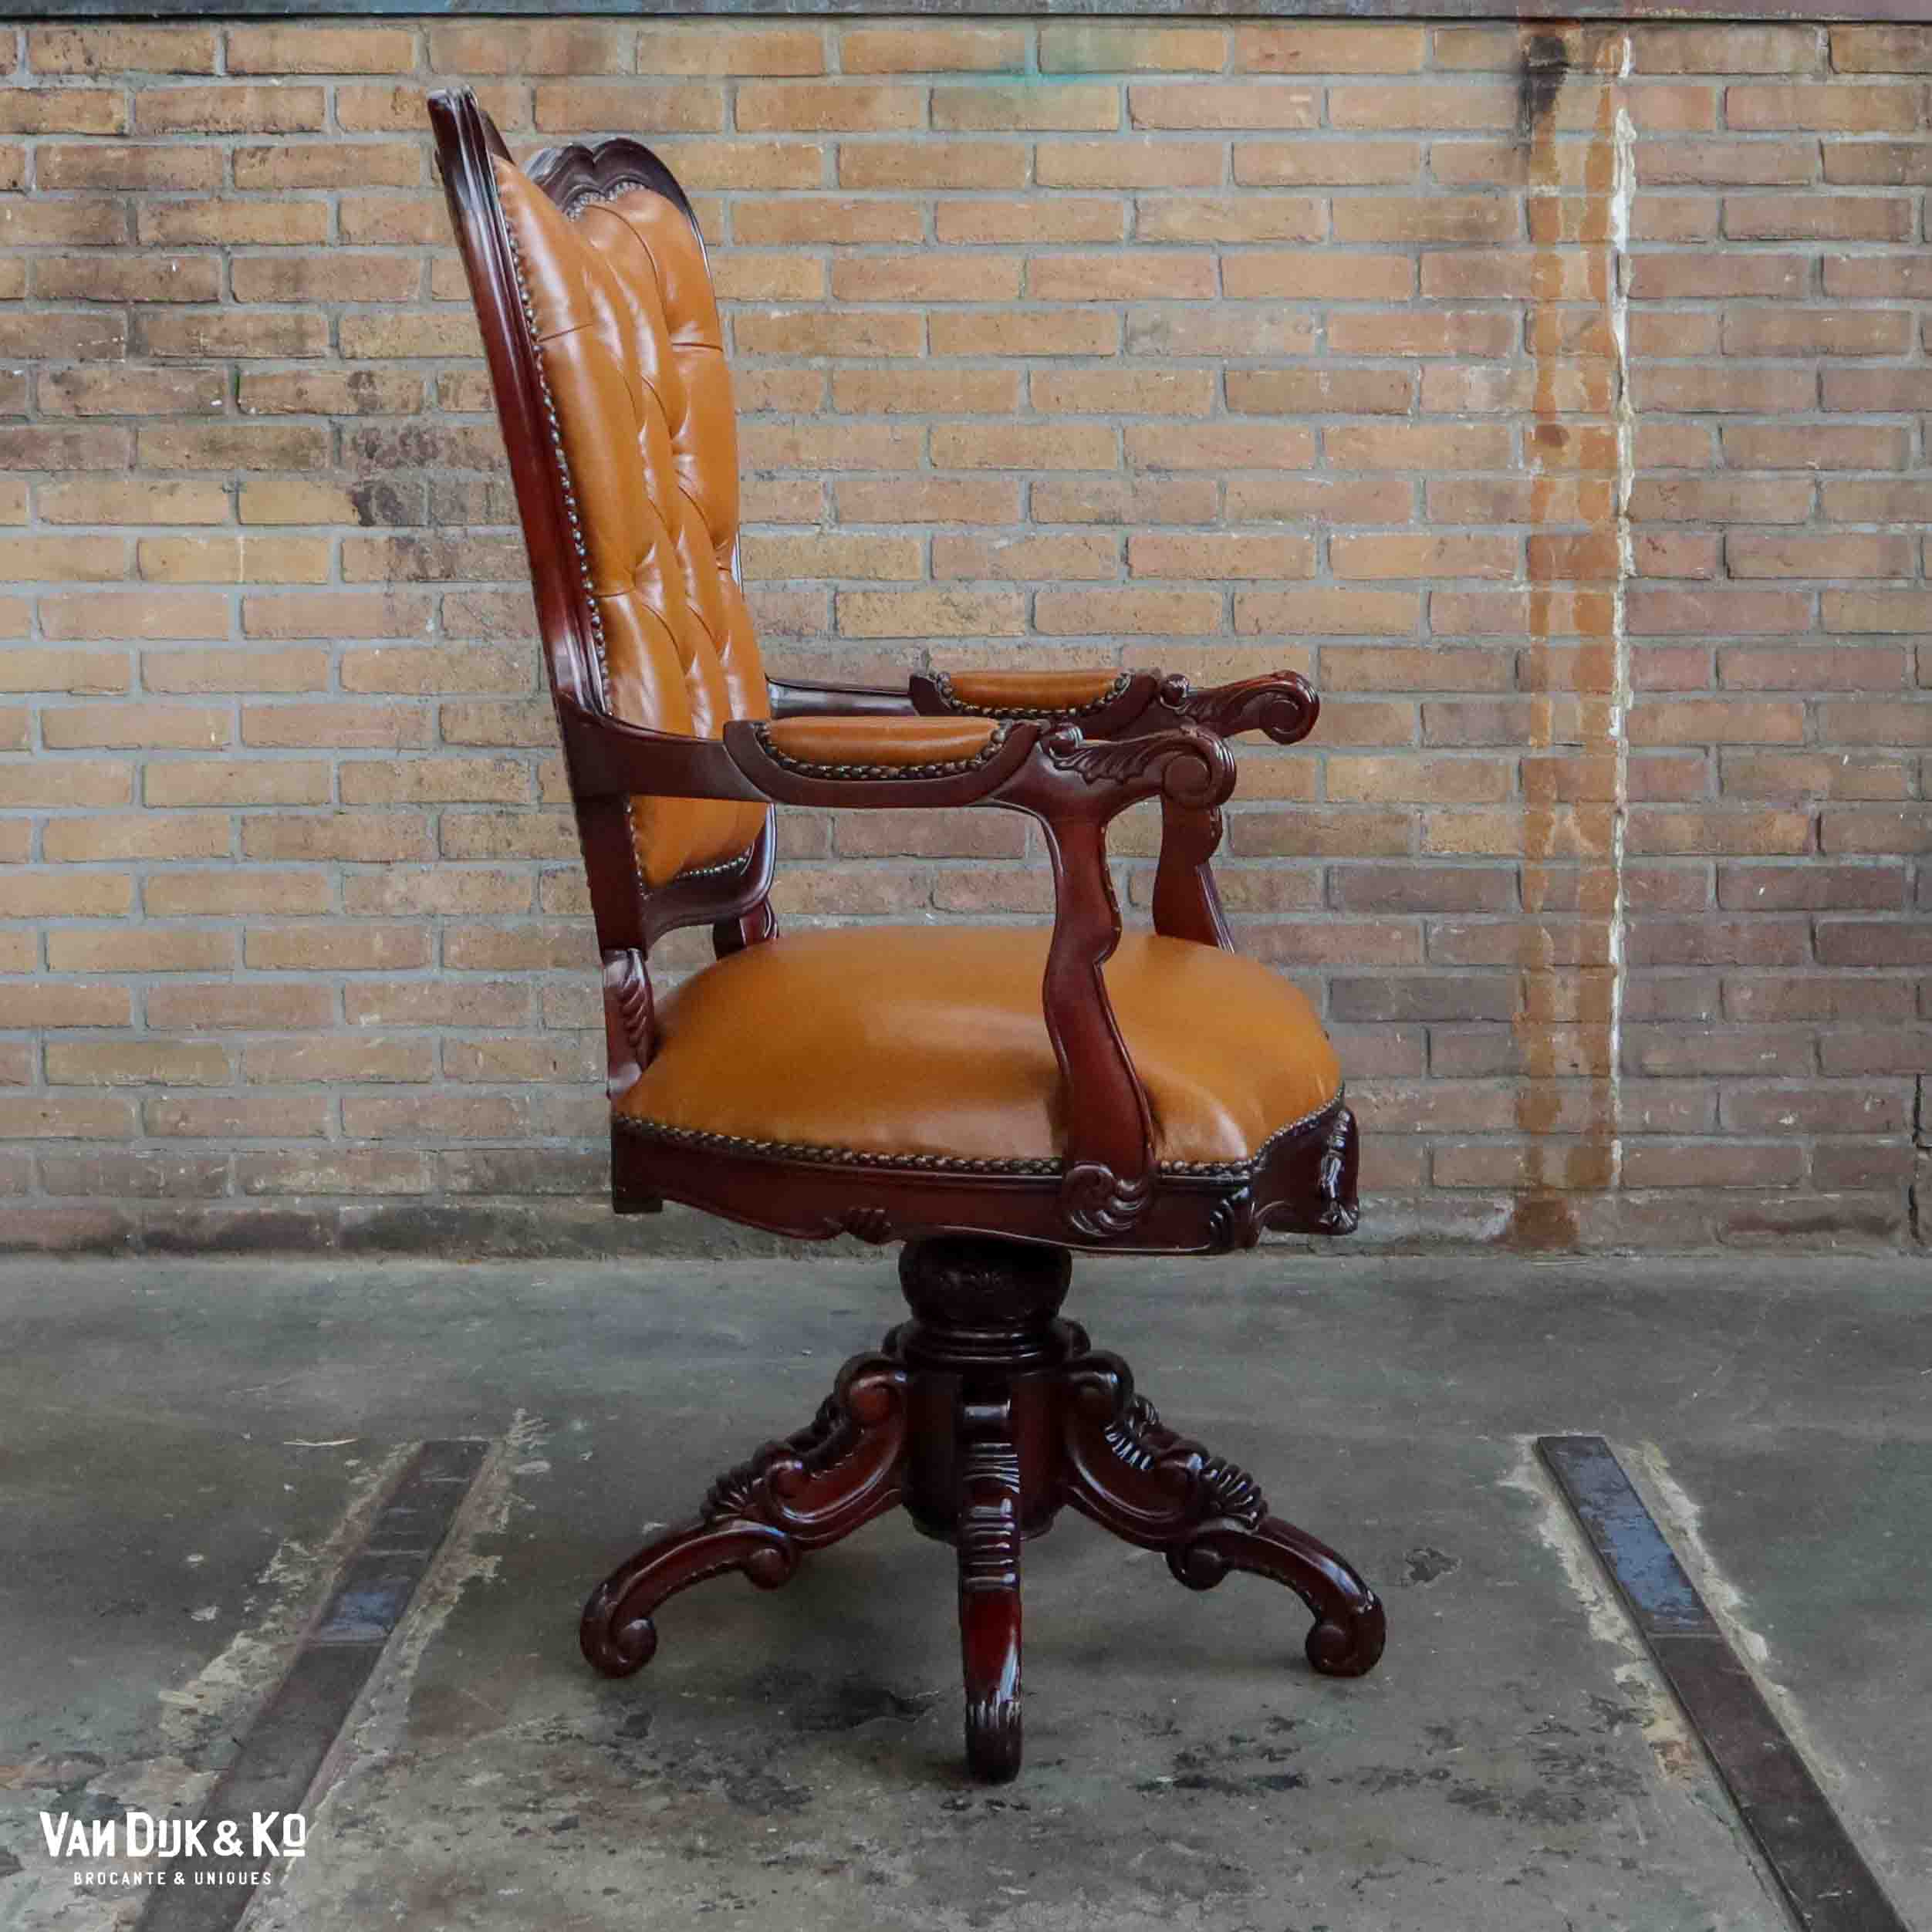 sap verlangen Weigering Vintage bureaustoel » Van Dijk & Ko